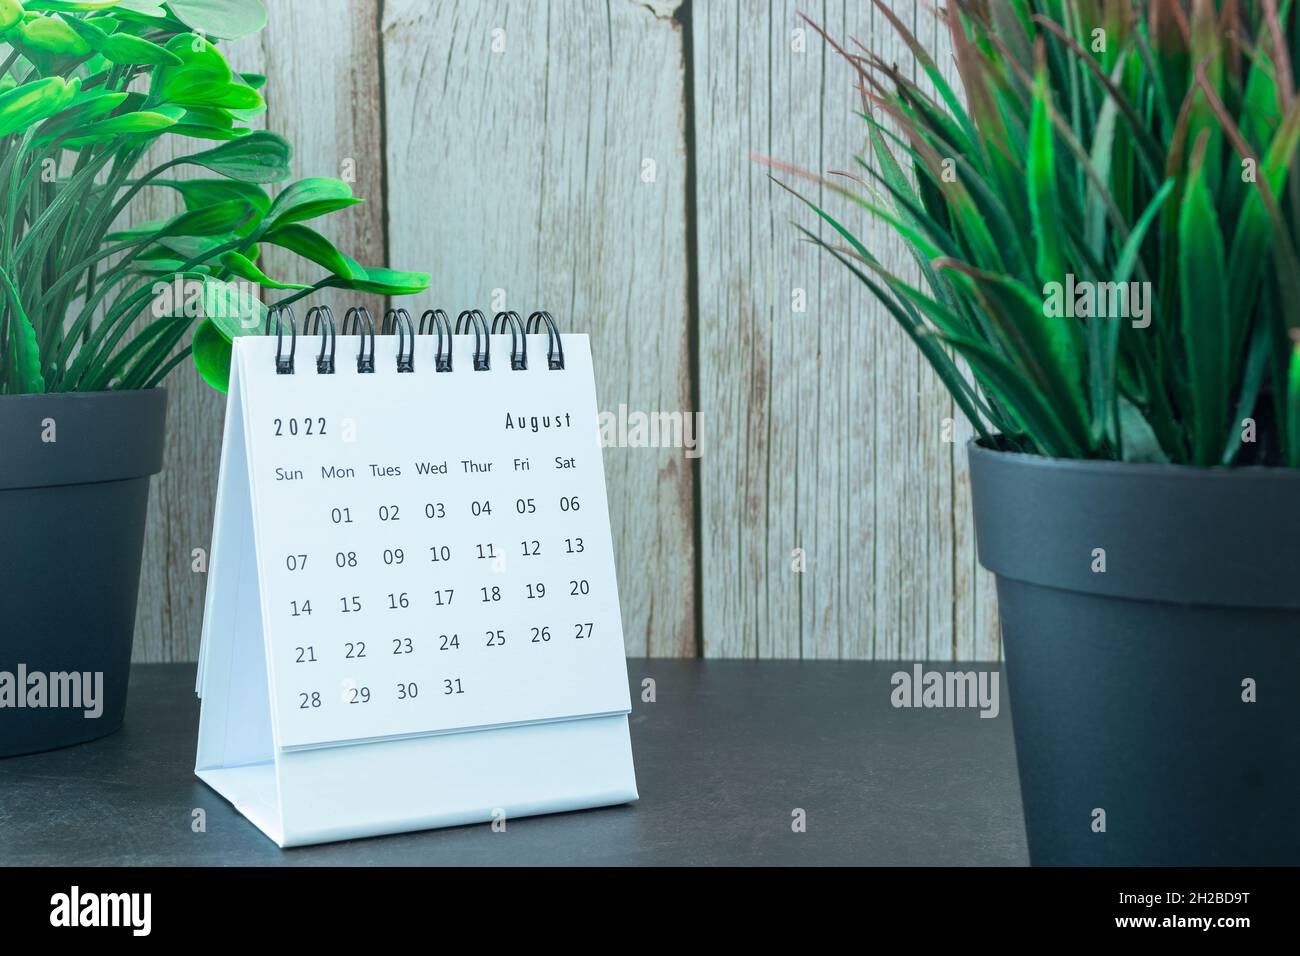 Calendrier blanc du 2022 septembre avec plante en pot.Concept du nouvel an 2022 Banque D'Images